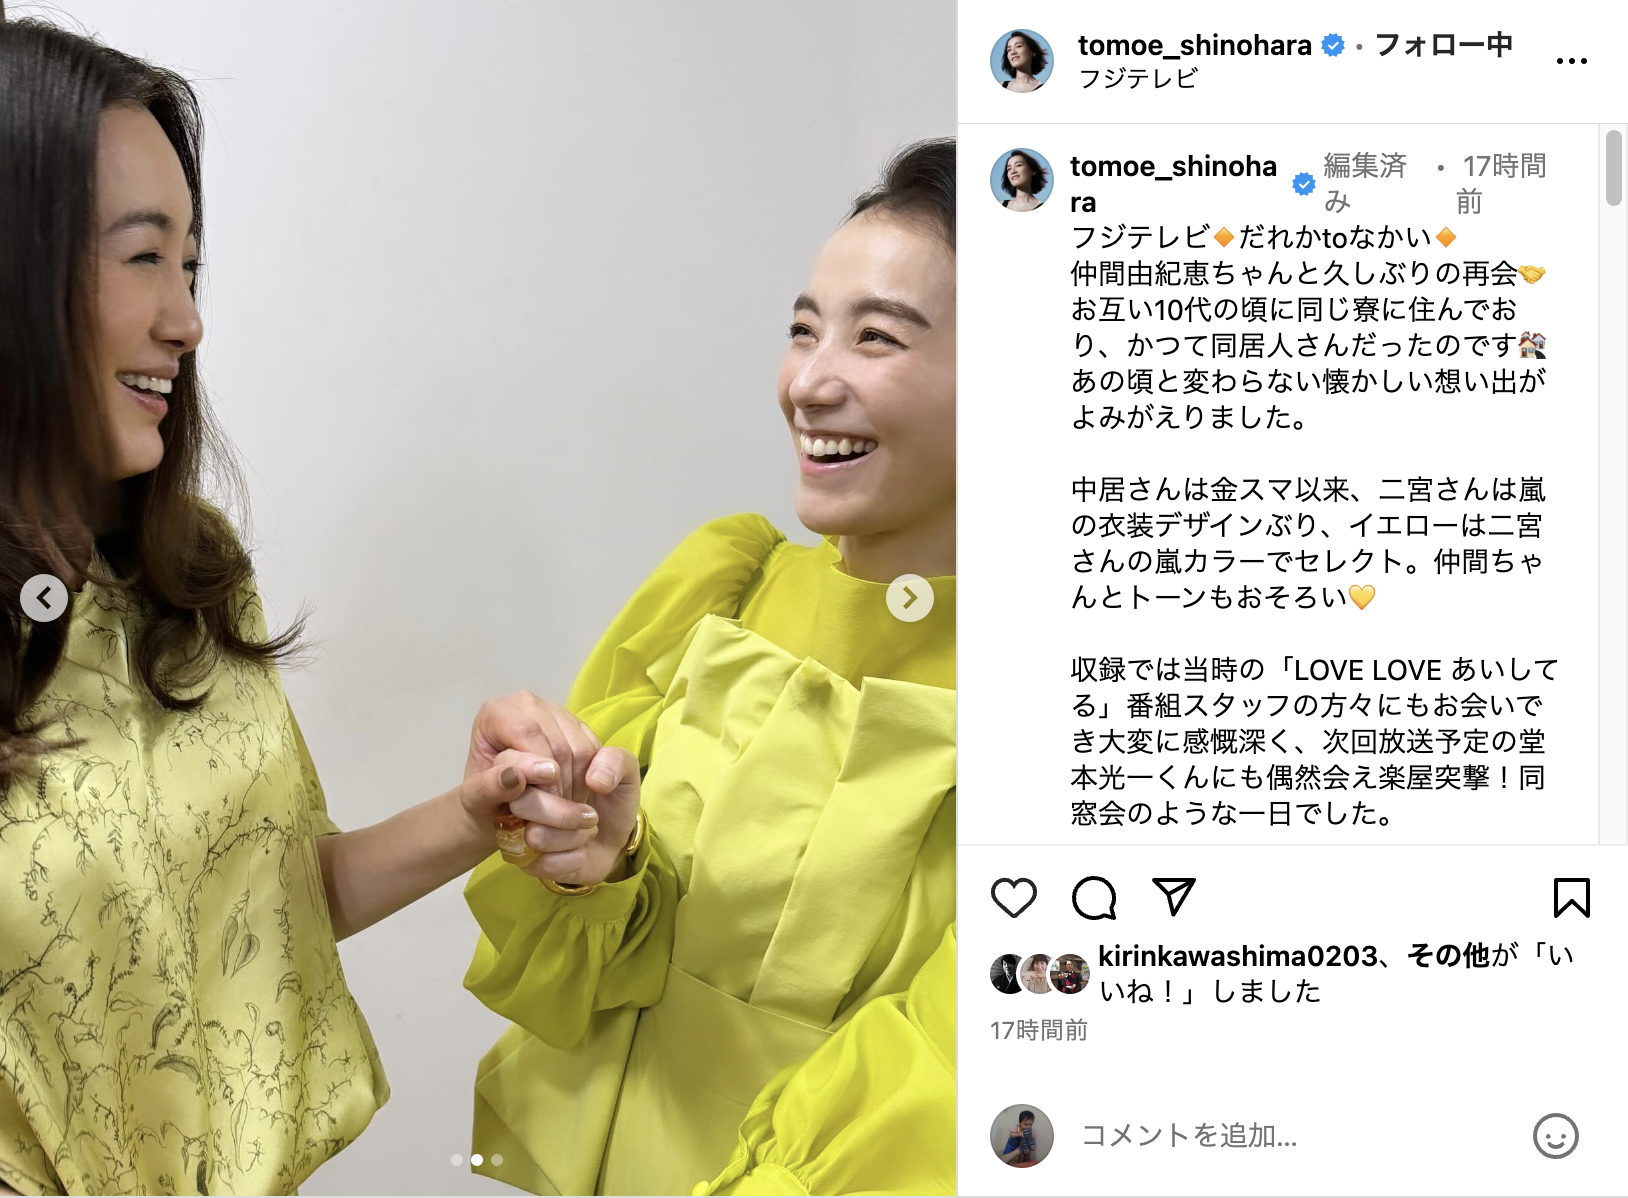 二人の女性が手を取り合って笑顔でカメラを見ている。右の女性は黄緑色の服を着ている。